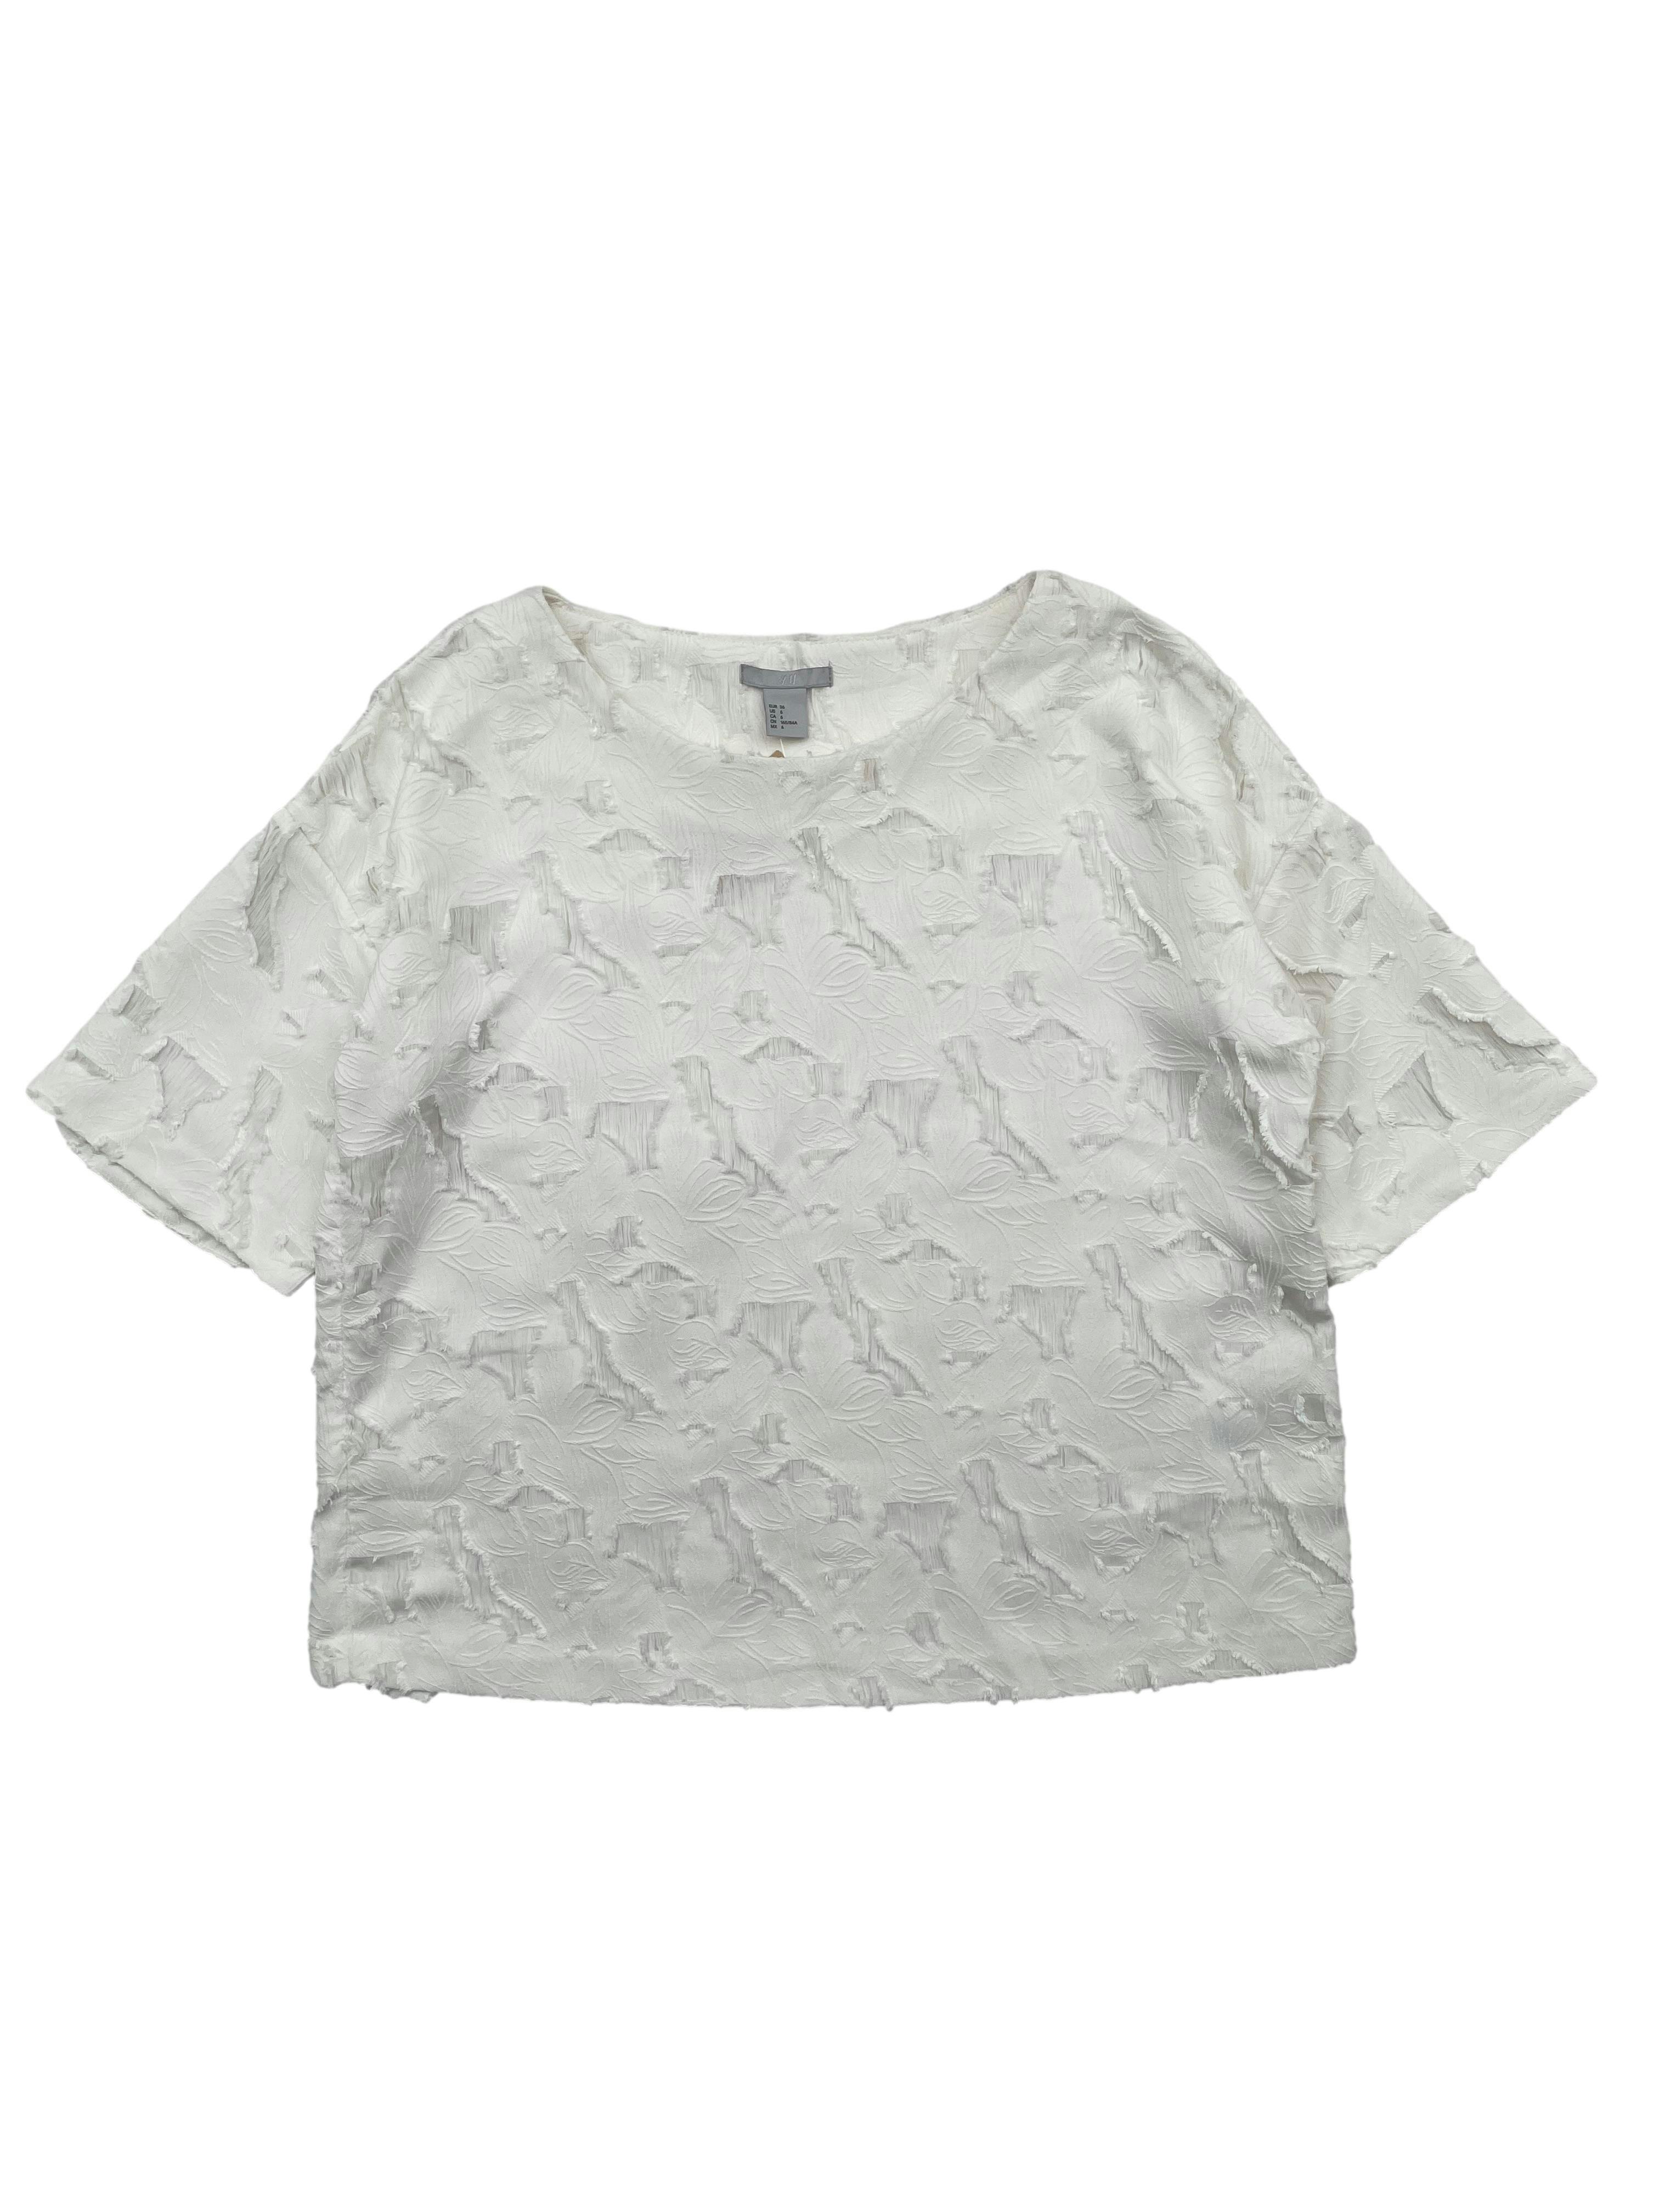 Blusa H&M color perla, tela plana con brocado floral y desflecados, ligera transparencia en los cortes. Busto 108cm, Largo 51cm.